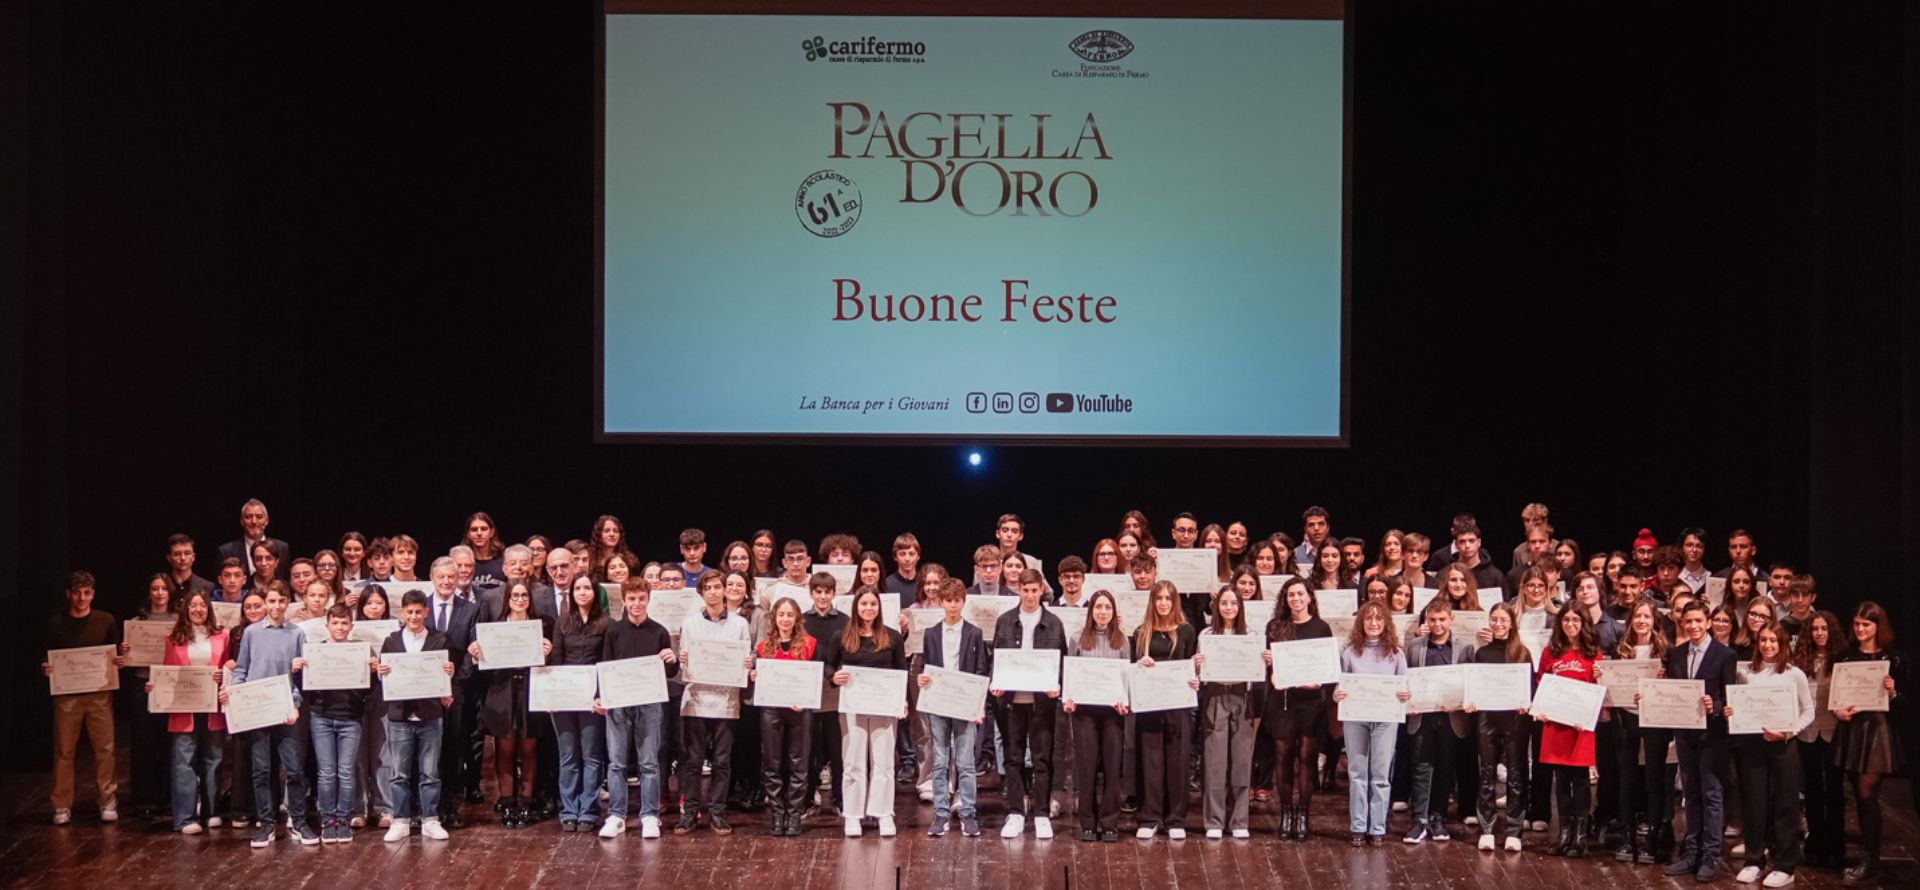 Premio Pagella d’Oro, la Carifermo premia 111 studenti 